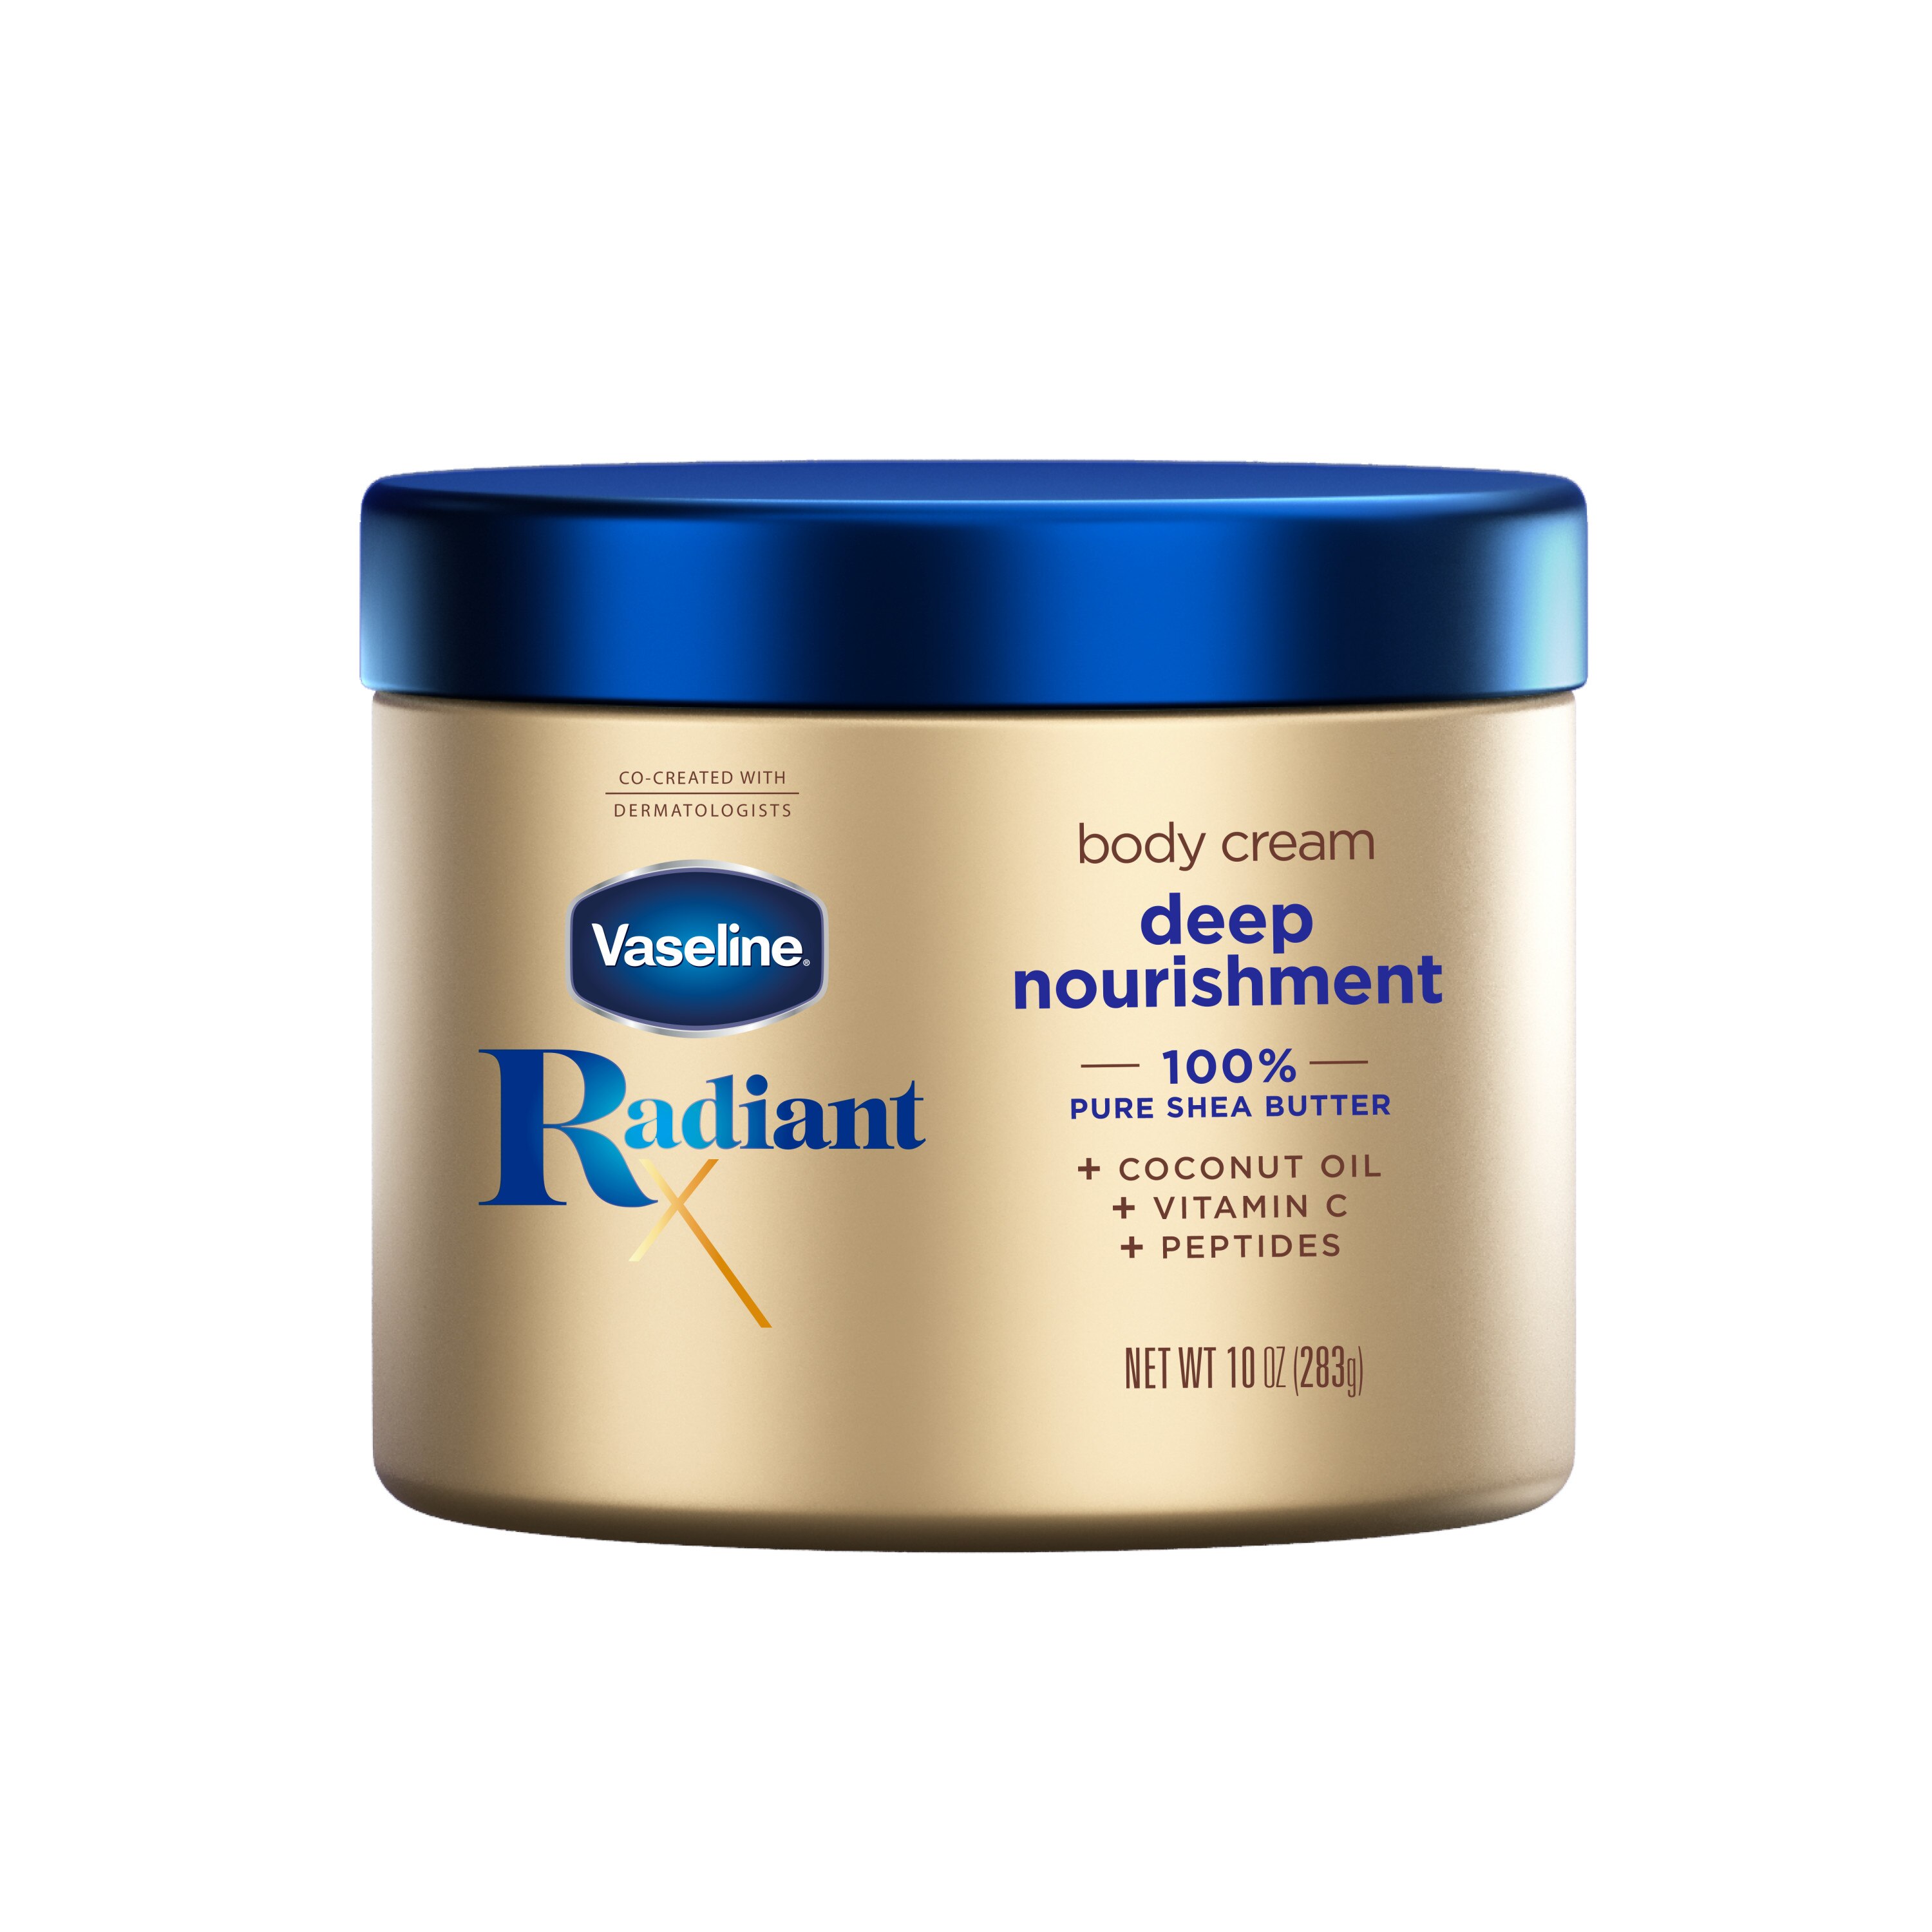 Vaseline Radiant X Deep Nourishment Body Cream, 10 OZ